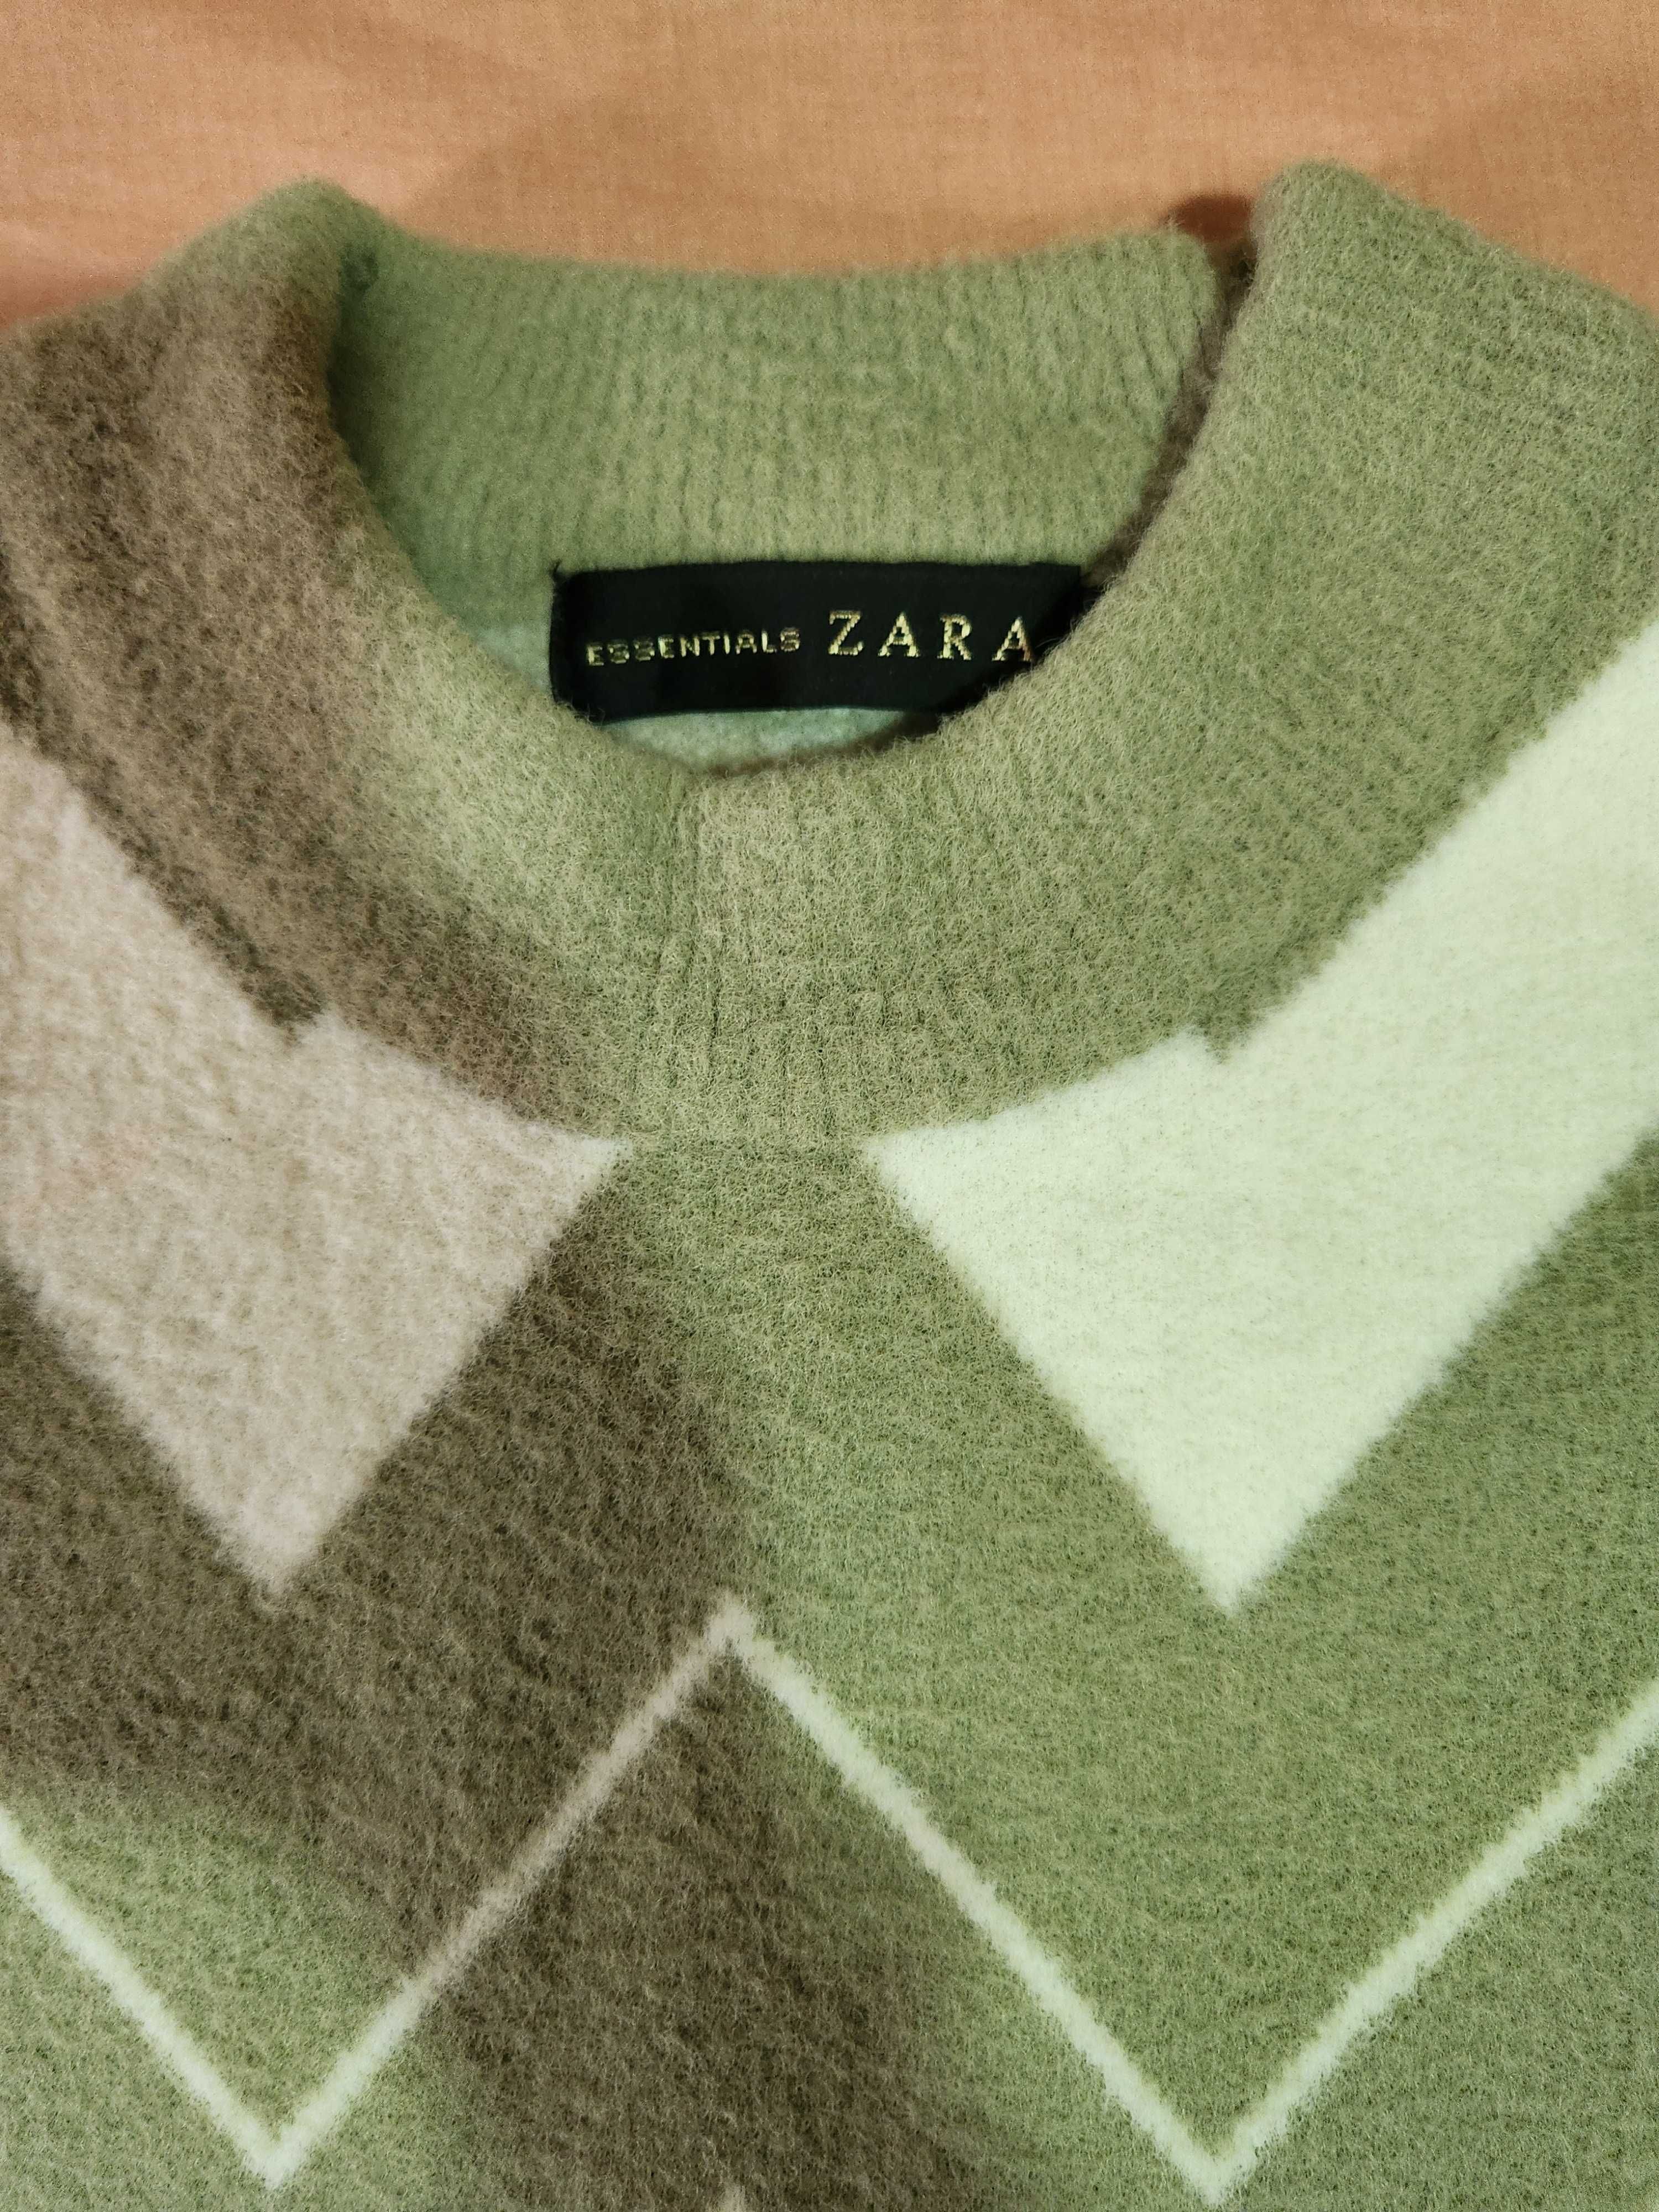 Zara essentials sweater